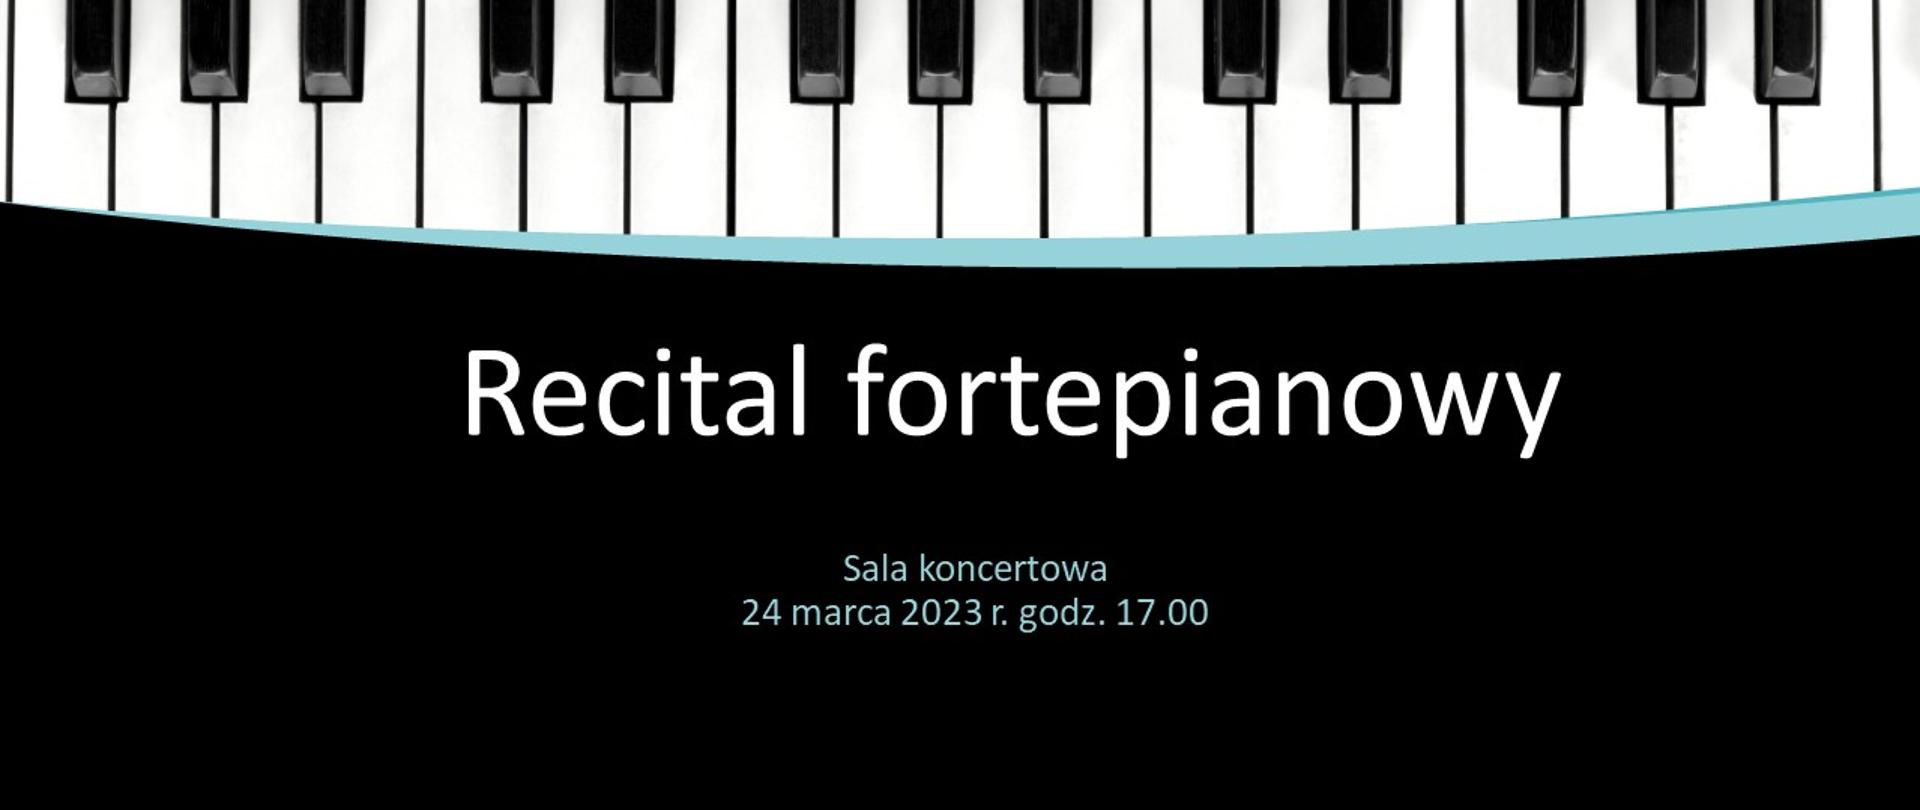 czarne tło z klawiaturą pianina w górnej części i napis Recital fortepianowy sala koncertowa 24 marca 2023 r. 17.00